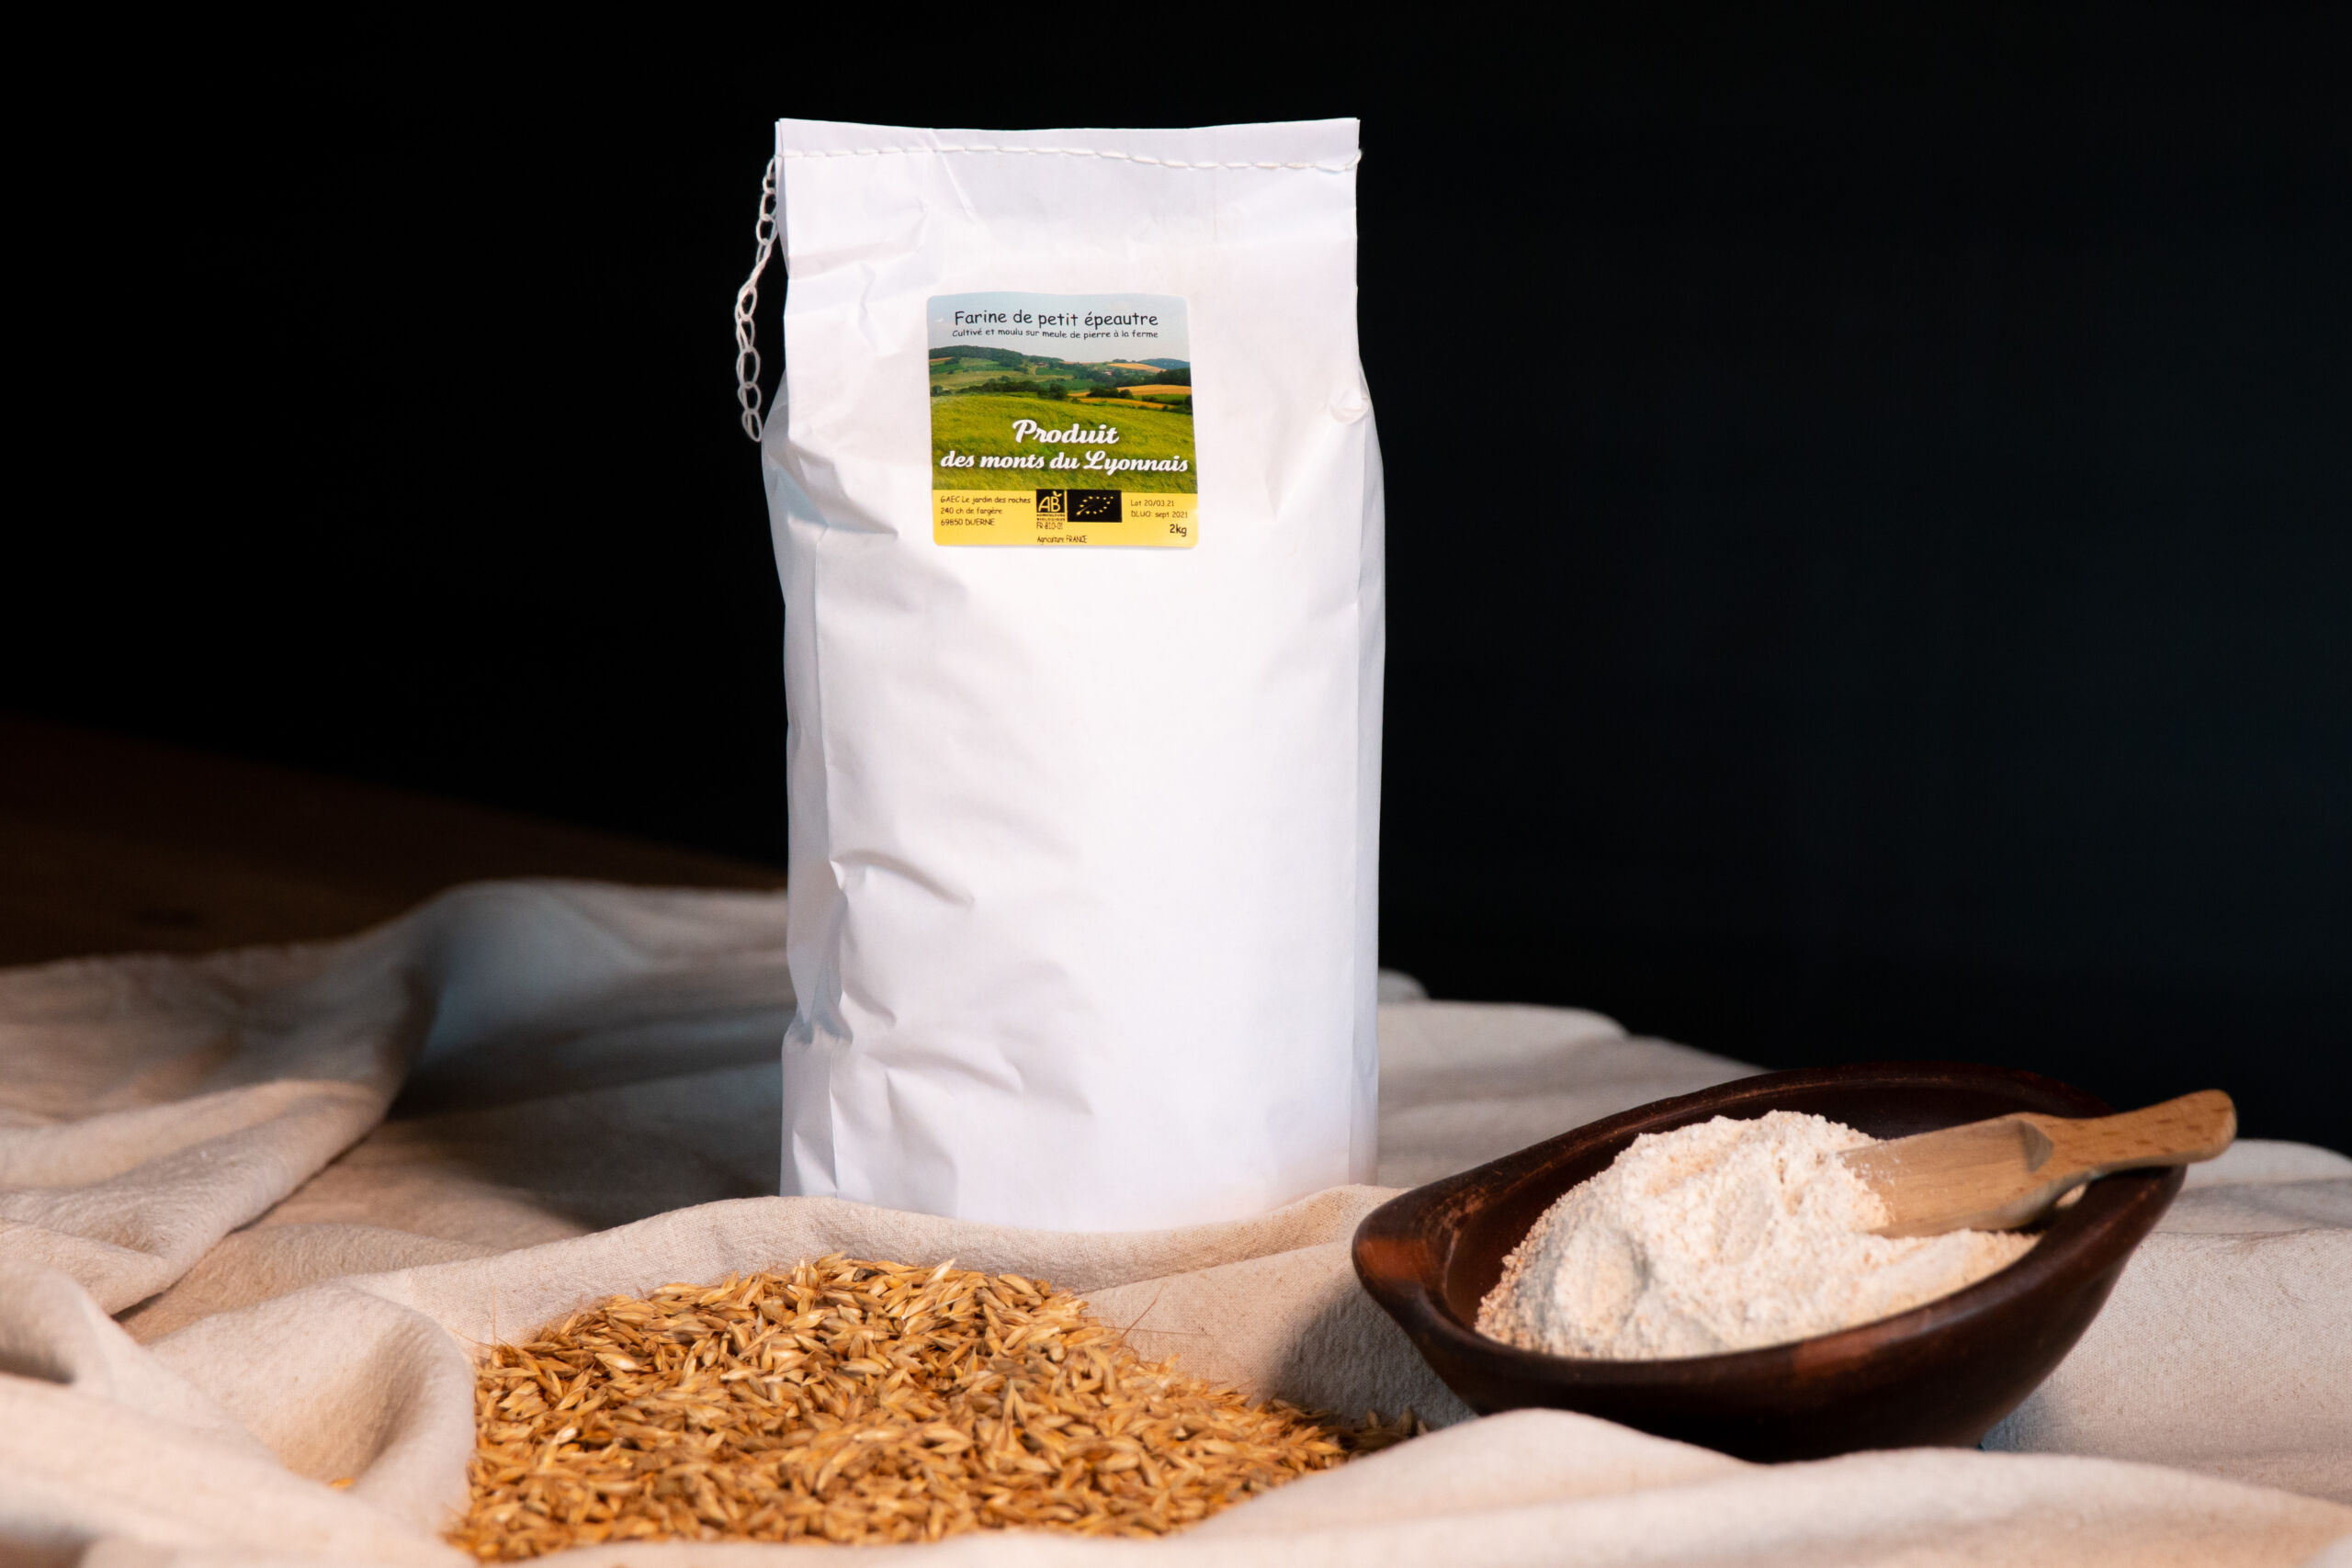 farine de blé bio t80 2kg